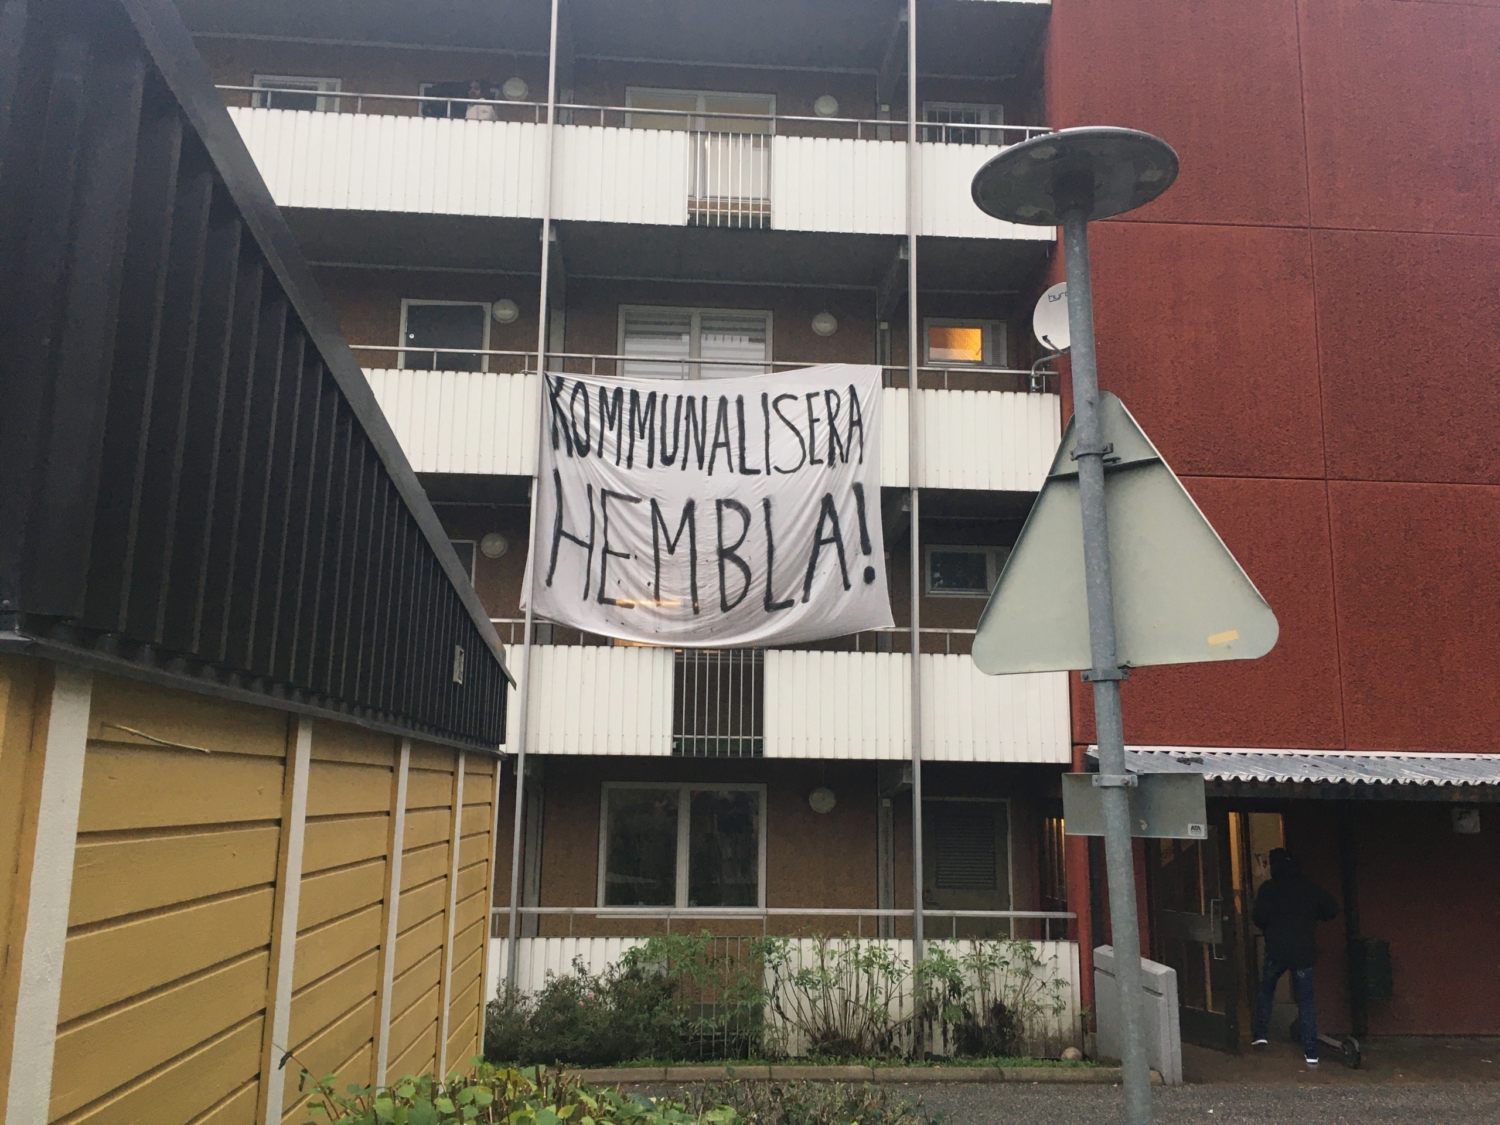 banderoll med texten "kommunalisera hembla" hänger från balkong